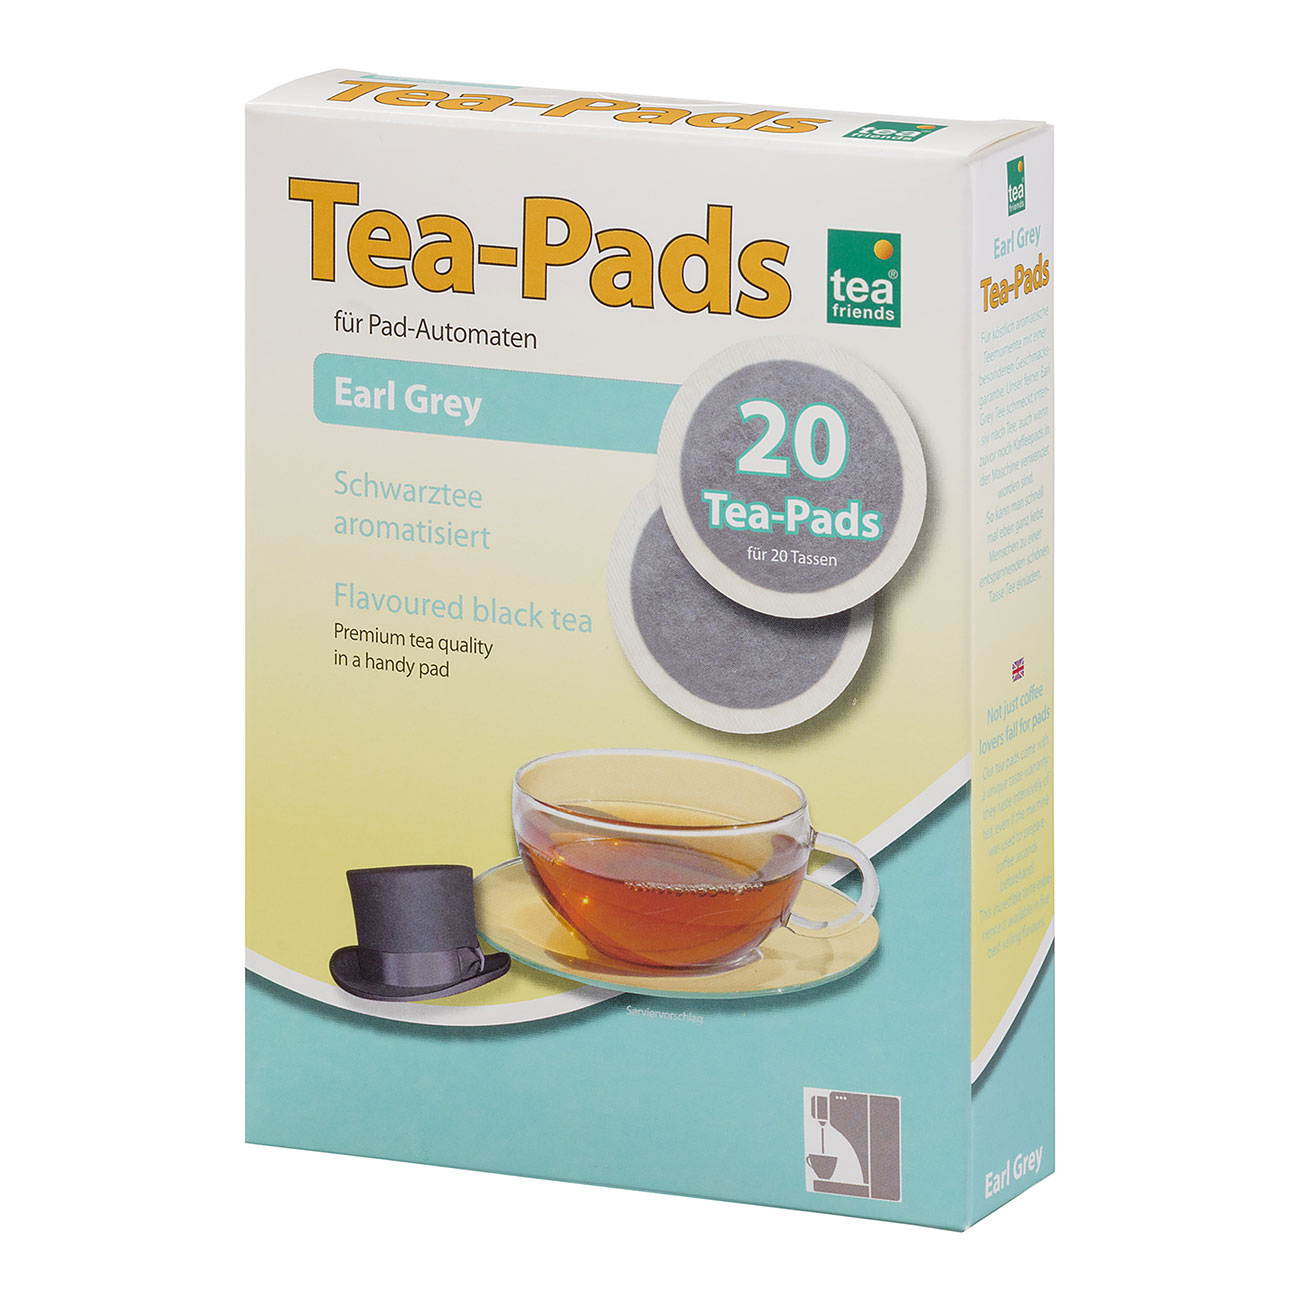 Tea-Pad "Earl Grey"